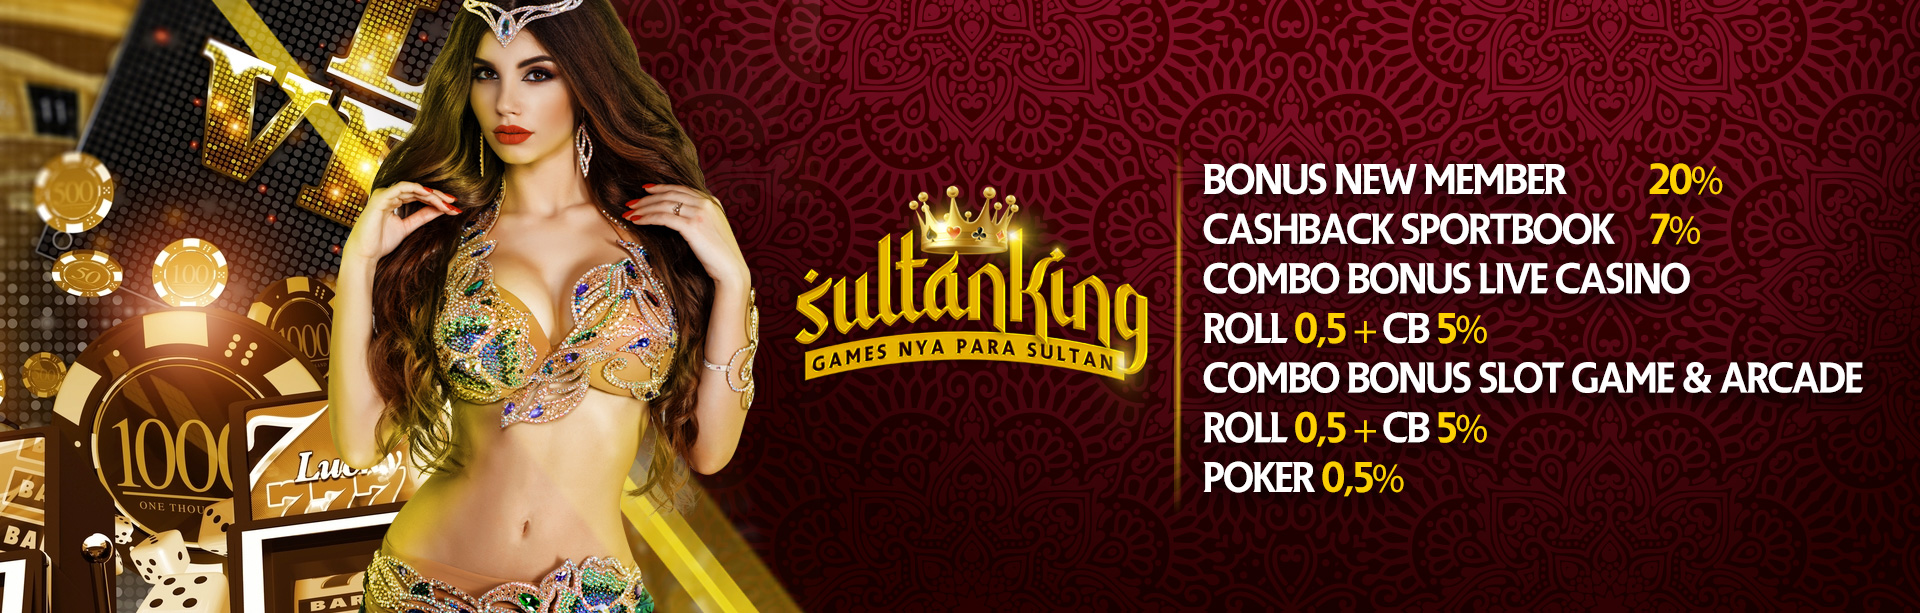 all promo bonus sultanking